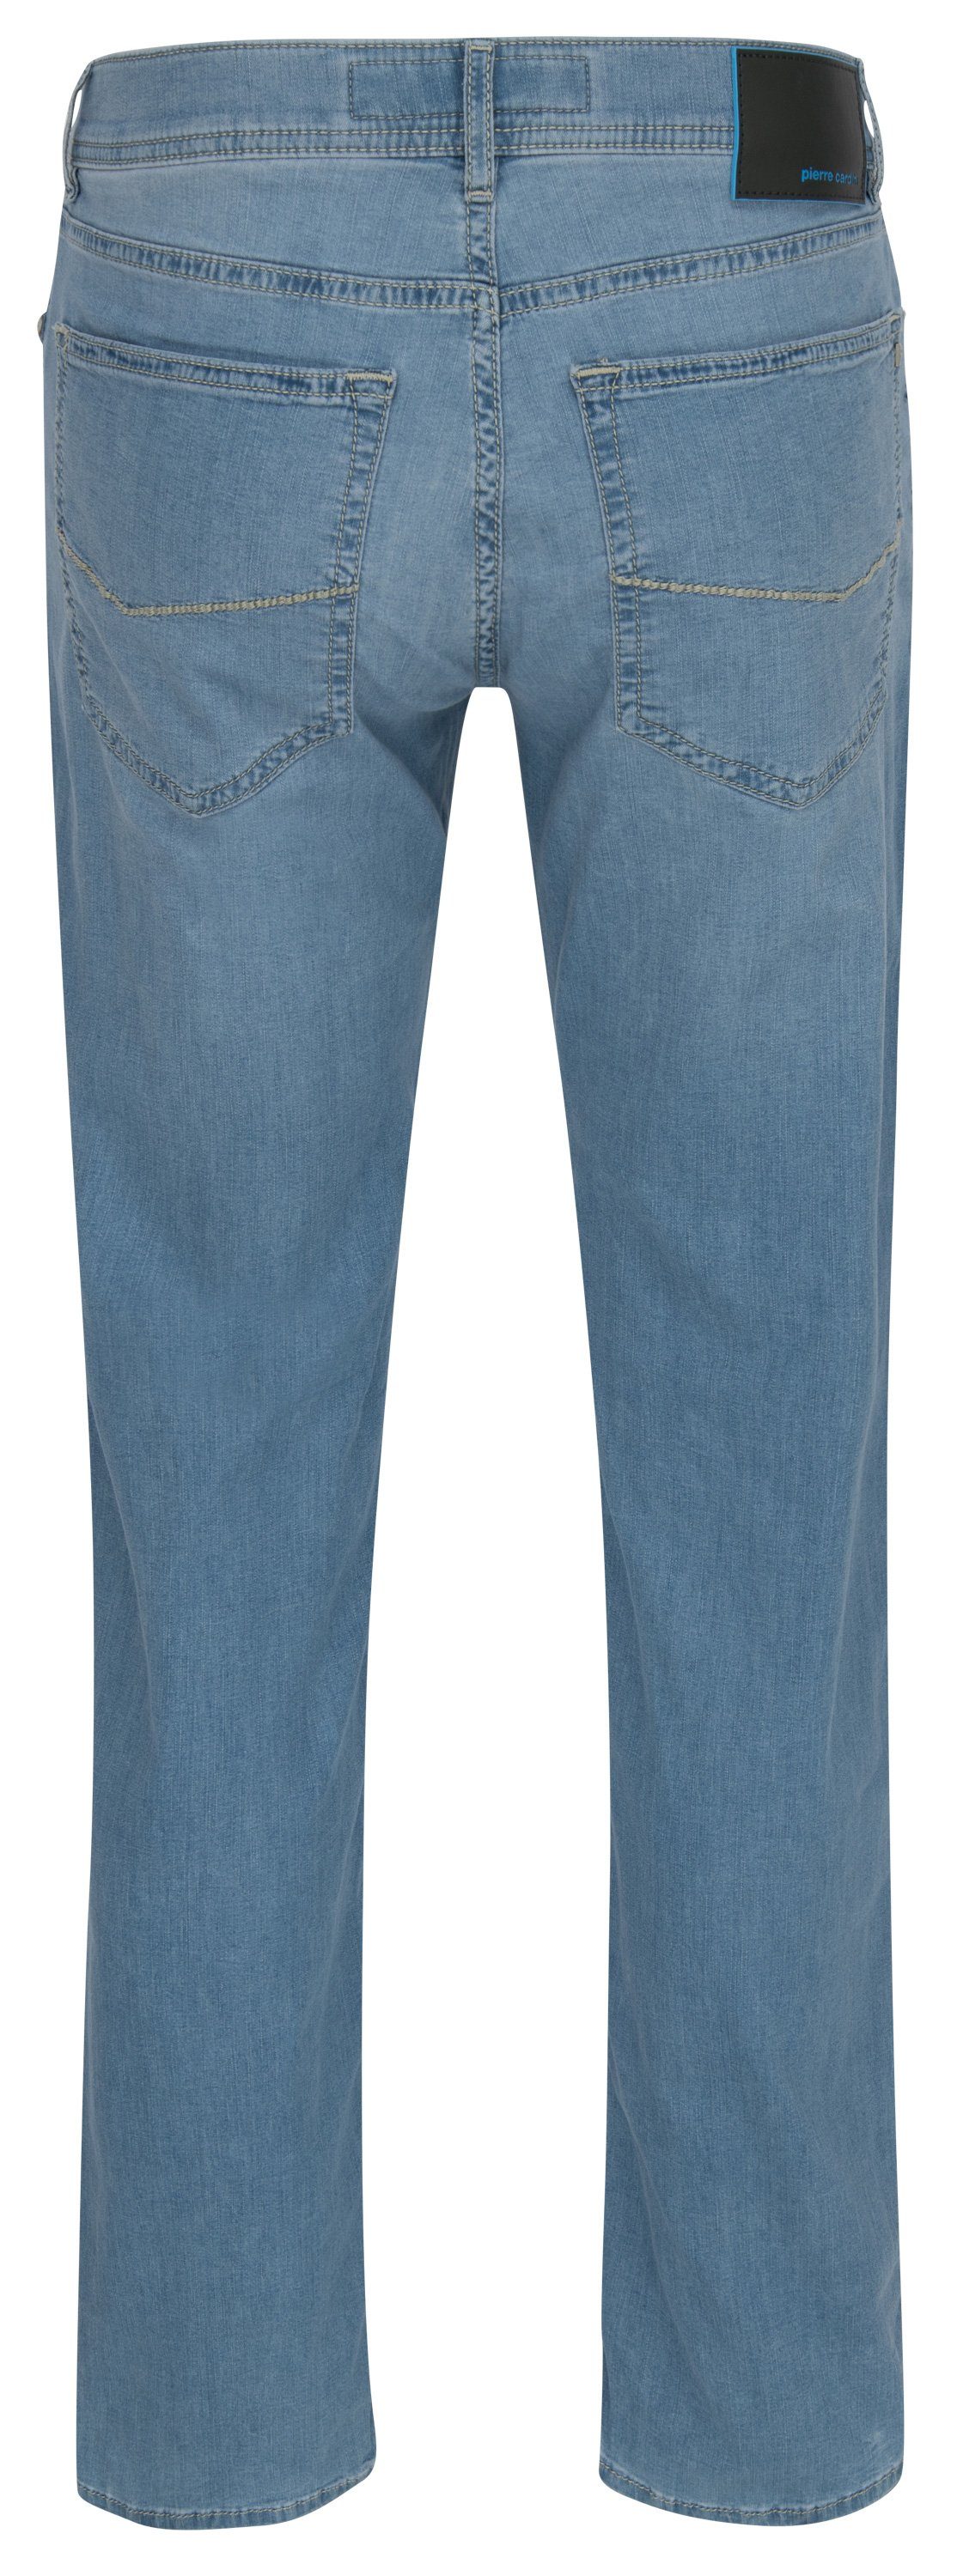 7335.6848 5-Pocket-Jeans 30910 Pierre LYON PIERRE CARDIN fashion Cardin blue light